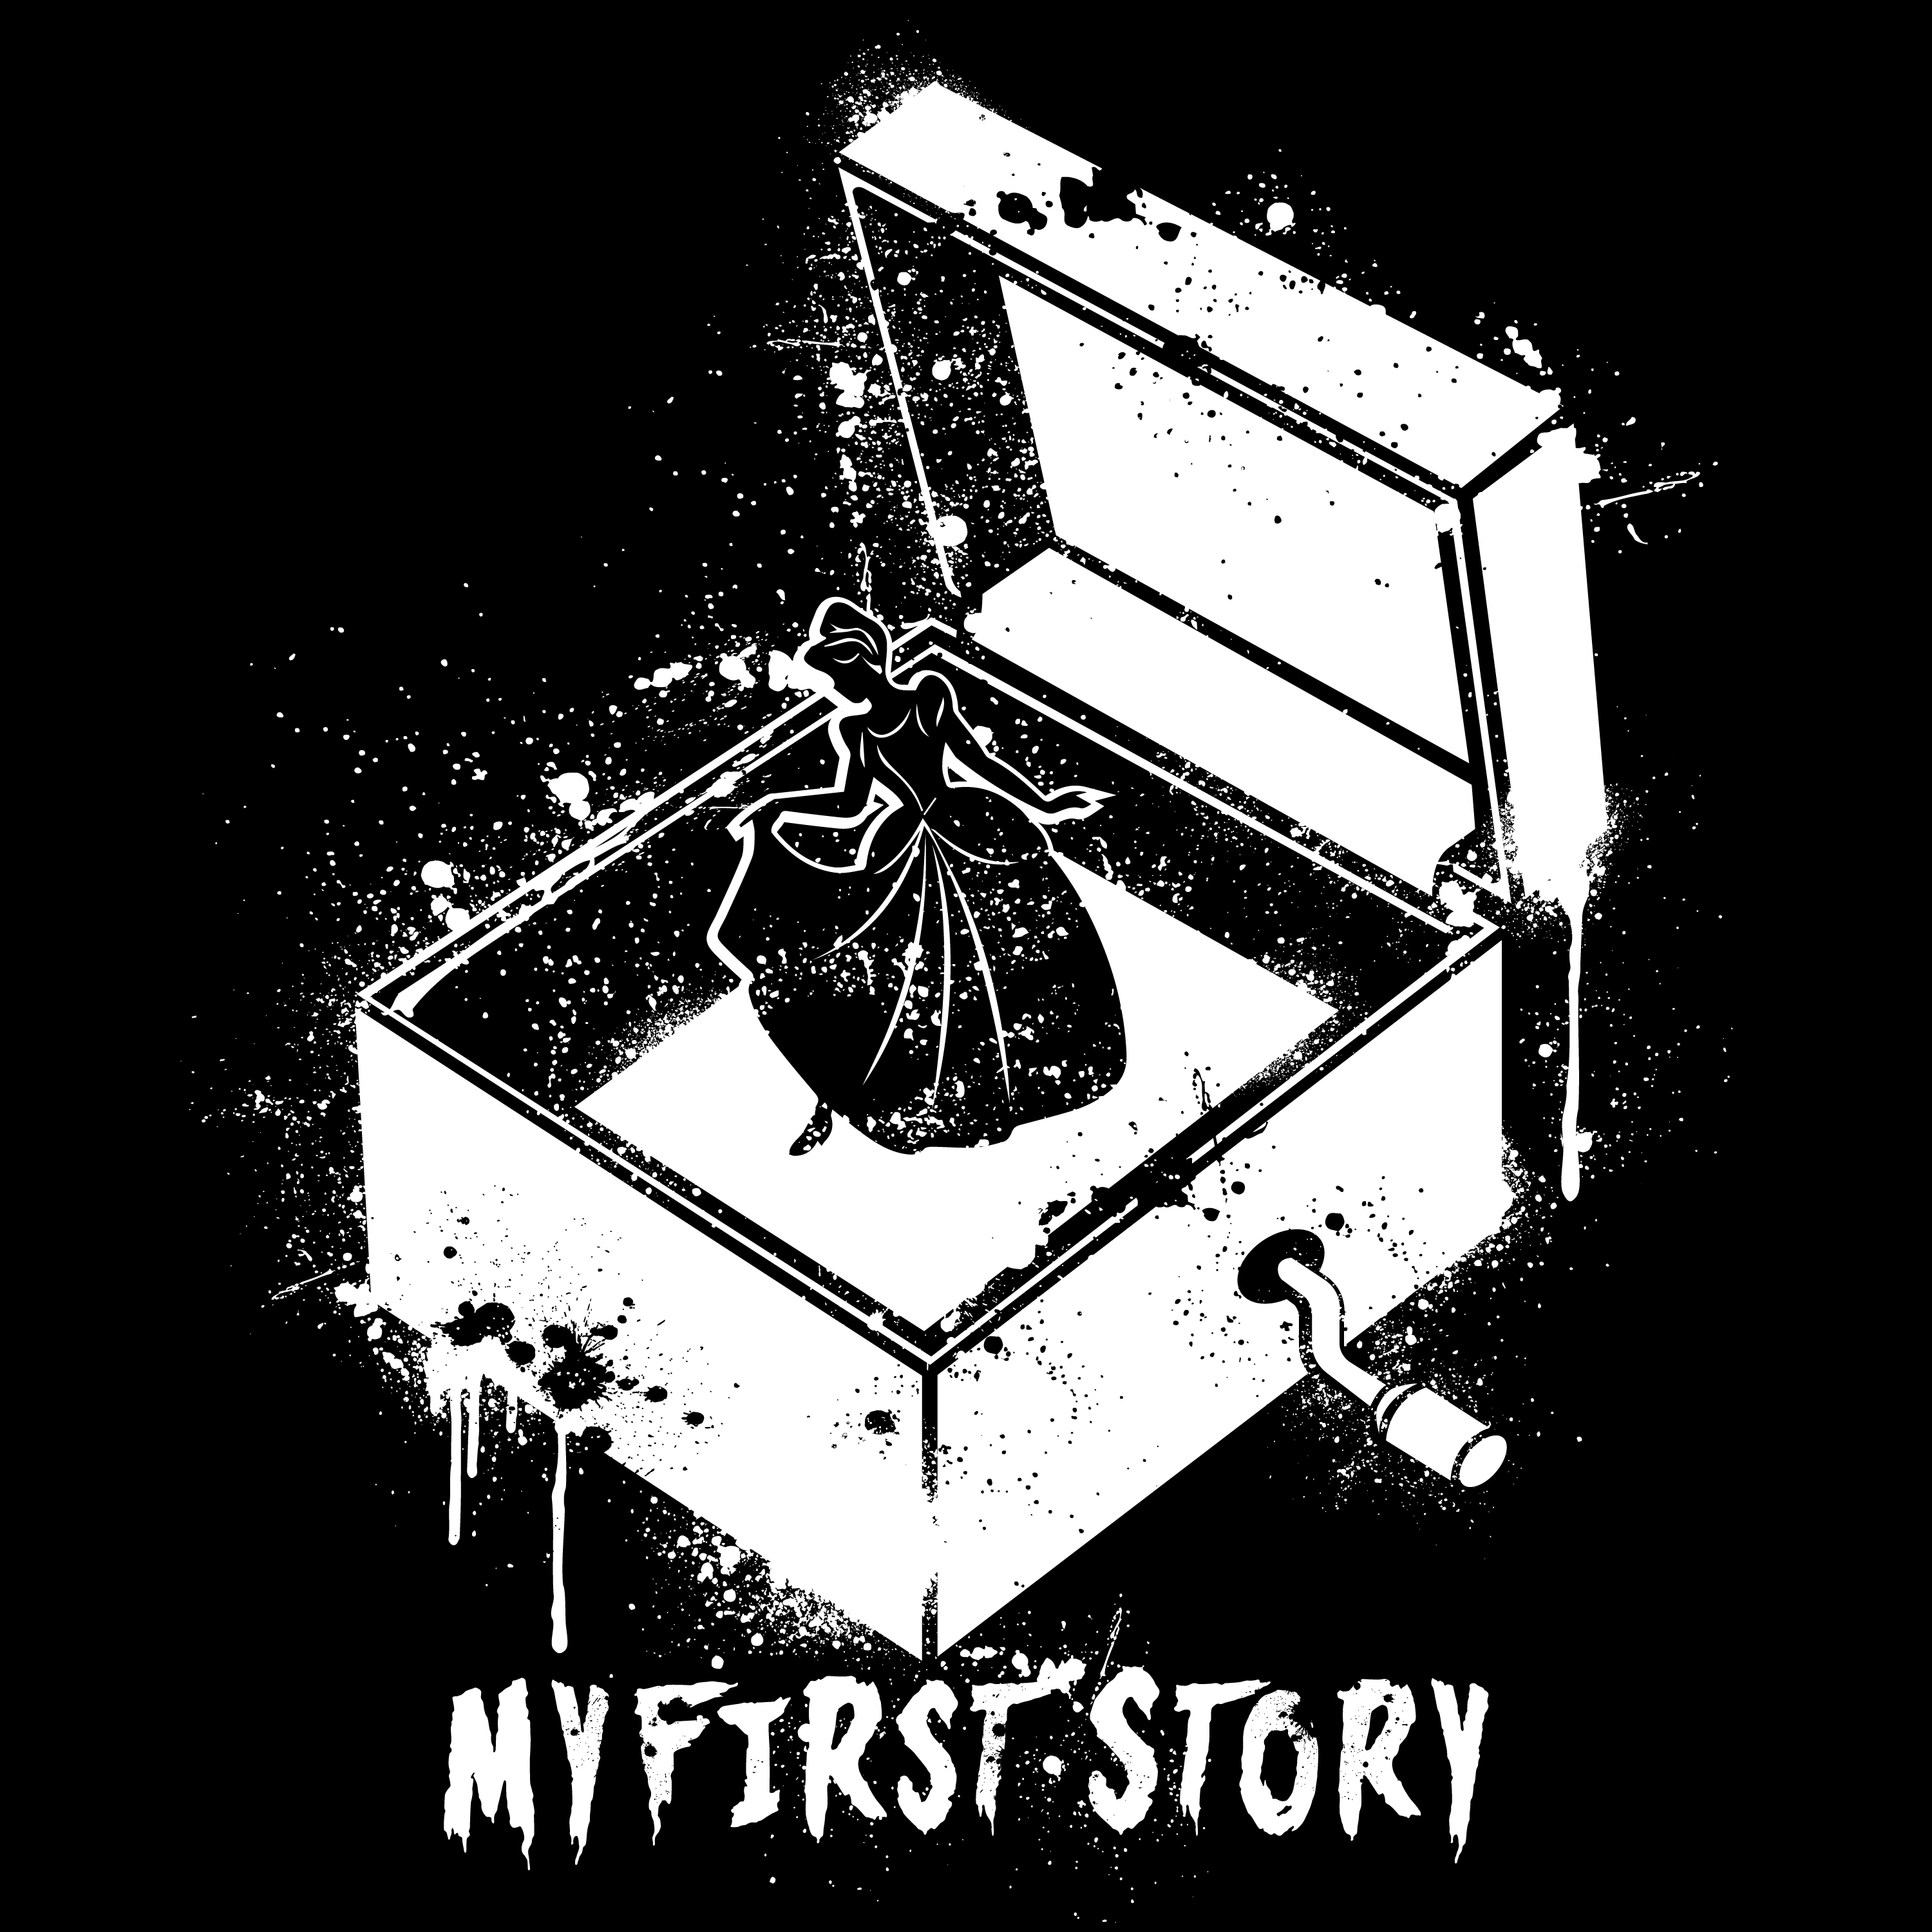 My First Story 配信限定インストアルバム Music Box 明日5月27日 木 午前0時より配信スタート 株式会社massenextのプレスリリース